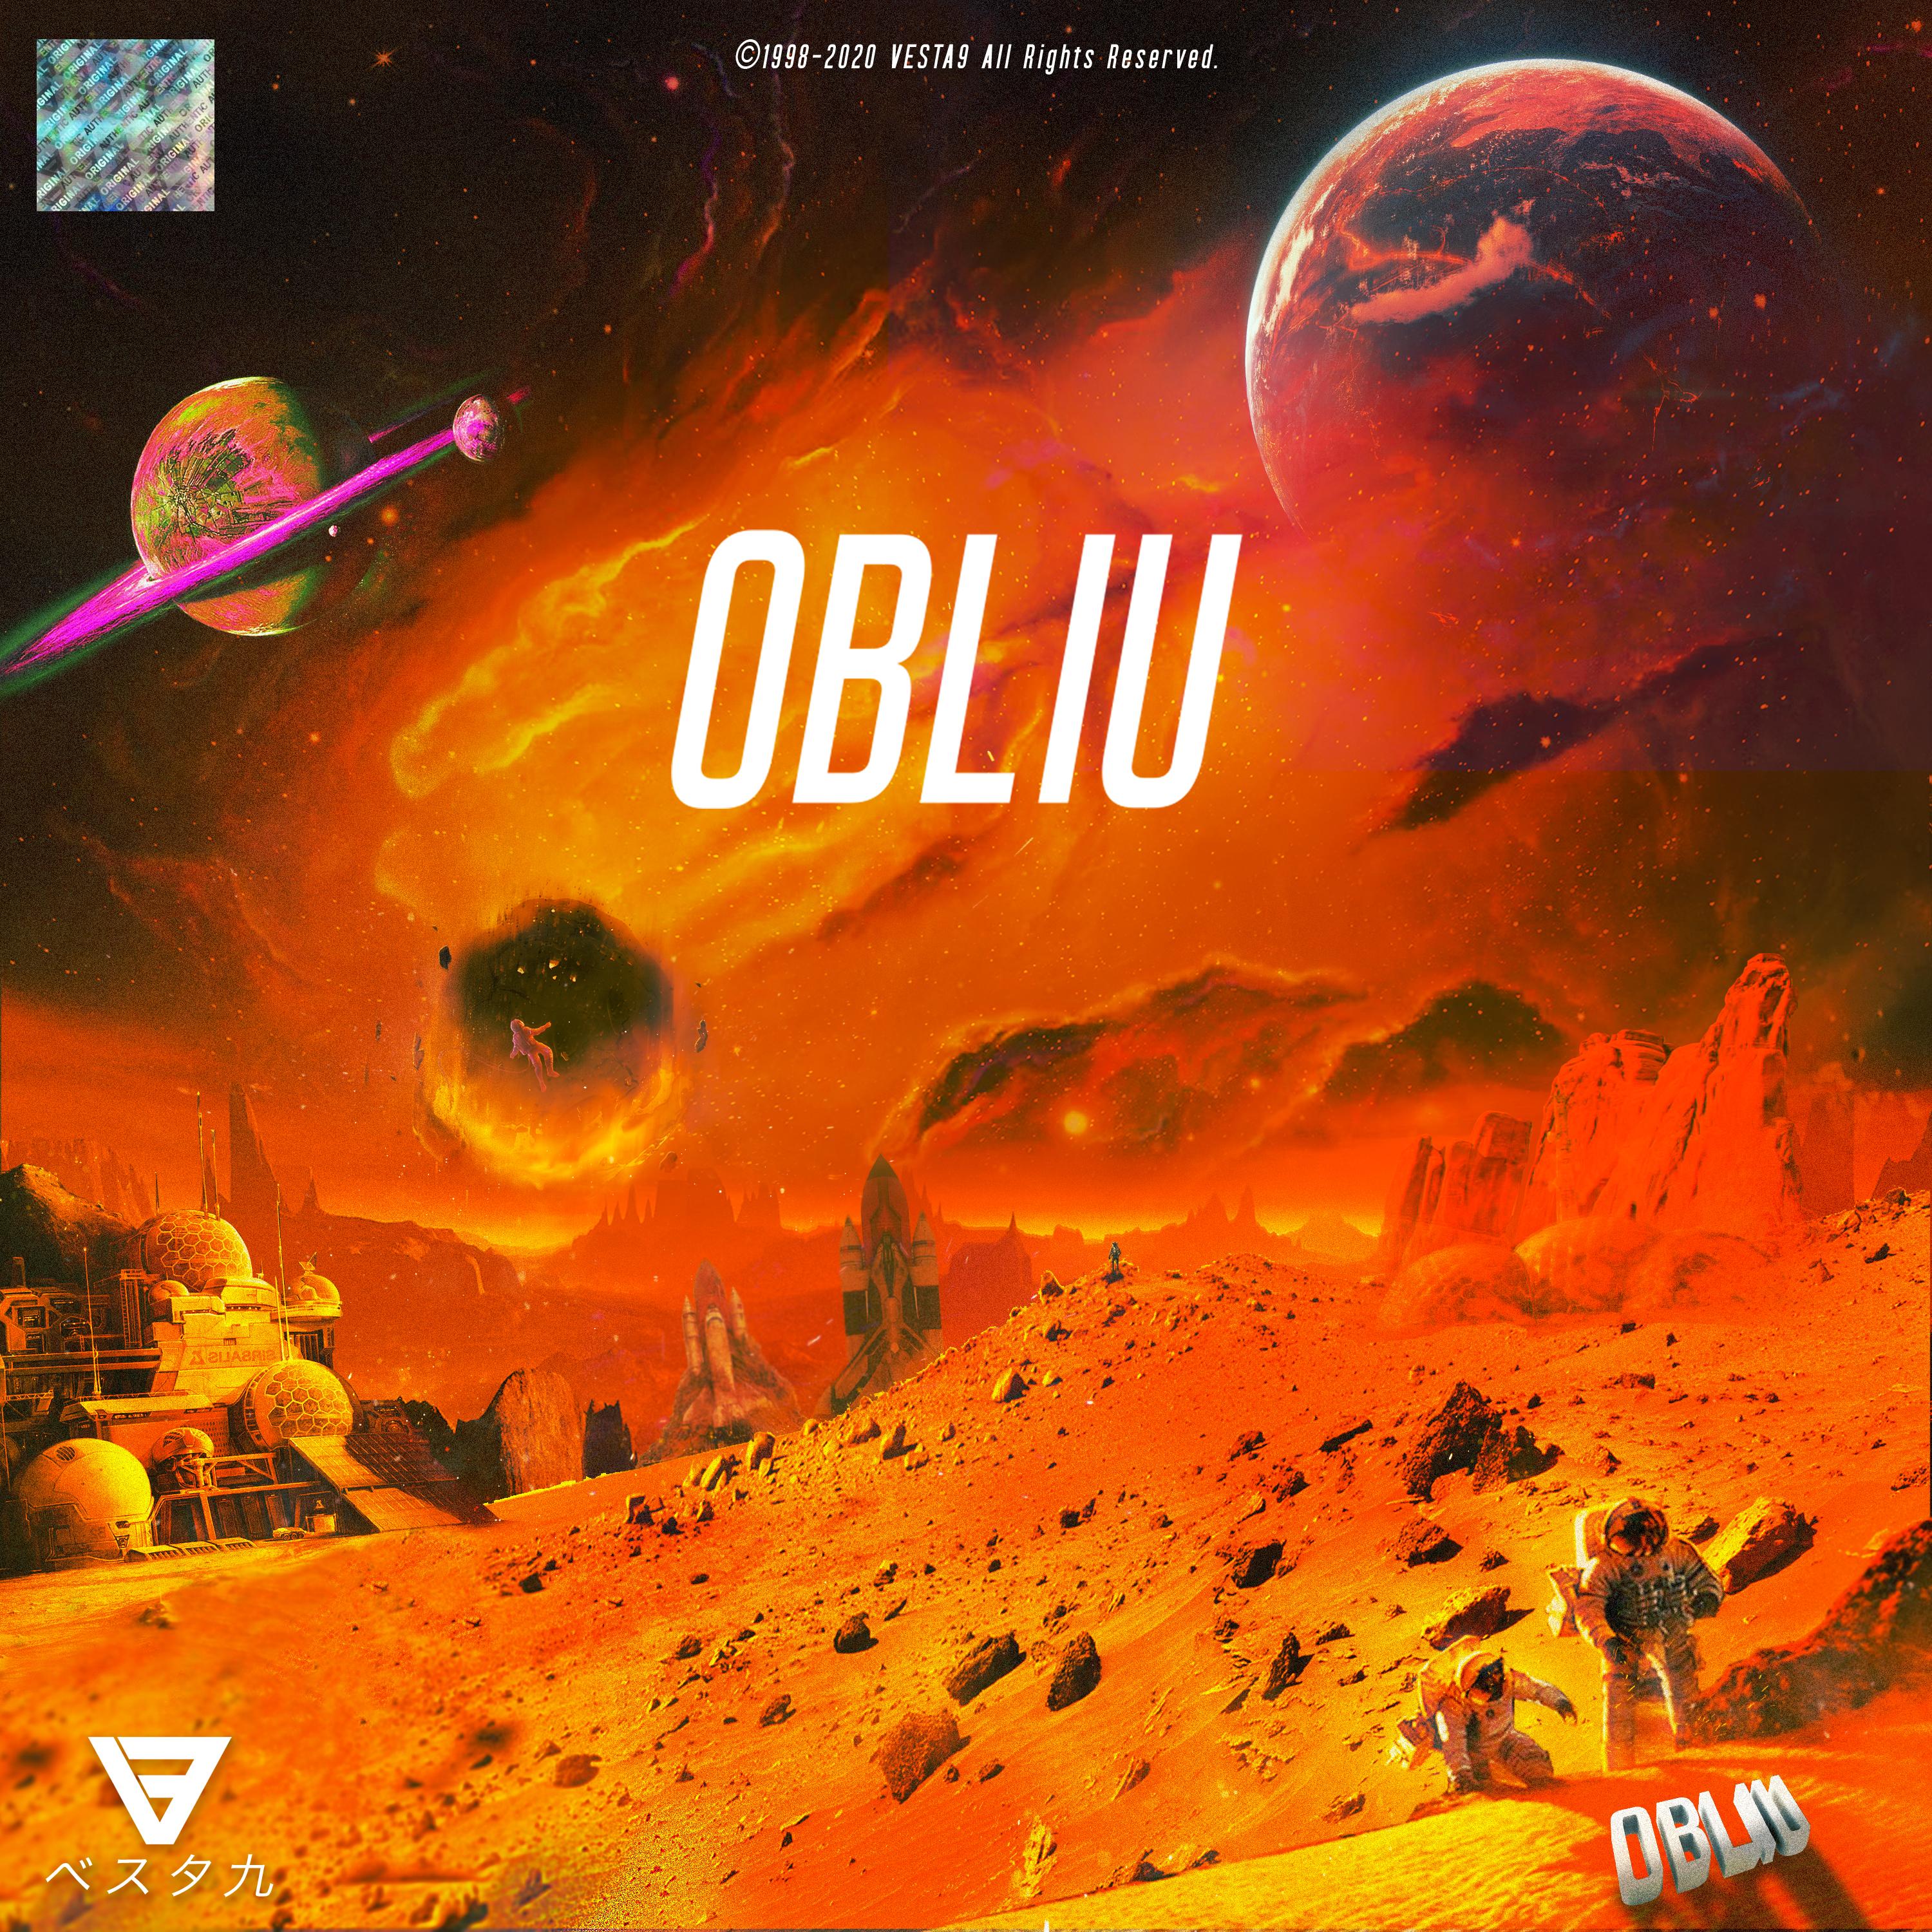 Obliu - 12/12 (2020)